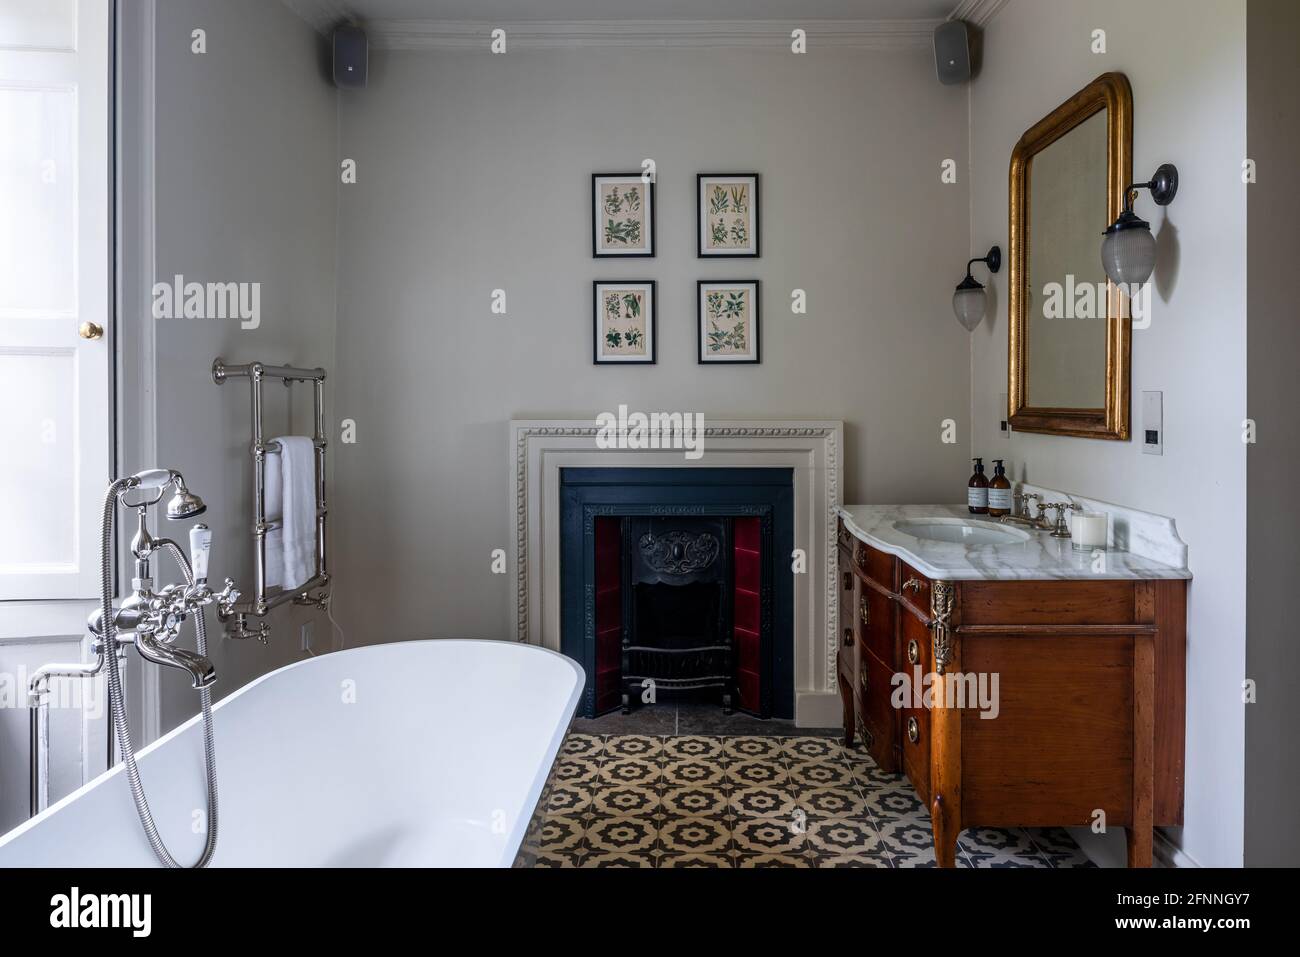 Lavabo ancien et foyer avec bain dans la maison du marchand de laine de Jacobean restaurée, Somerset. Banque D'Images